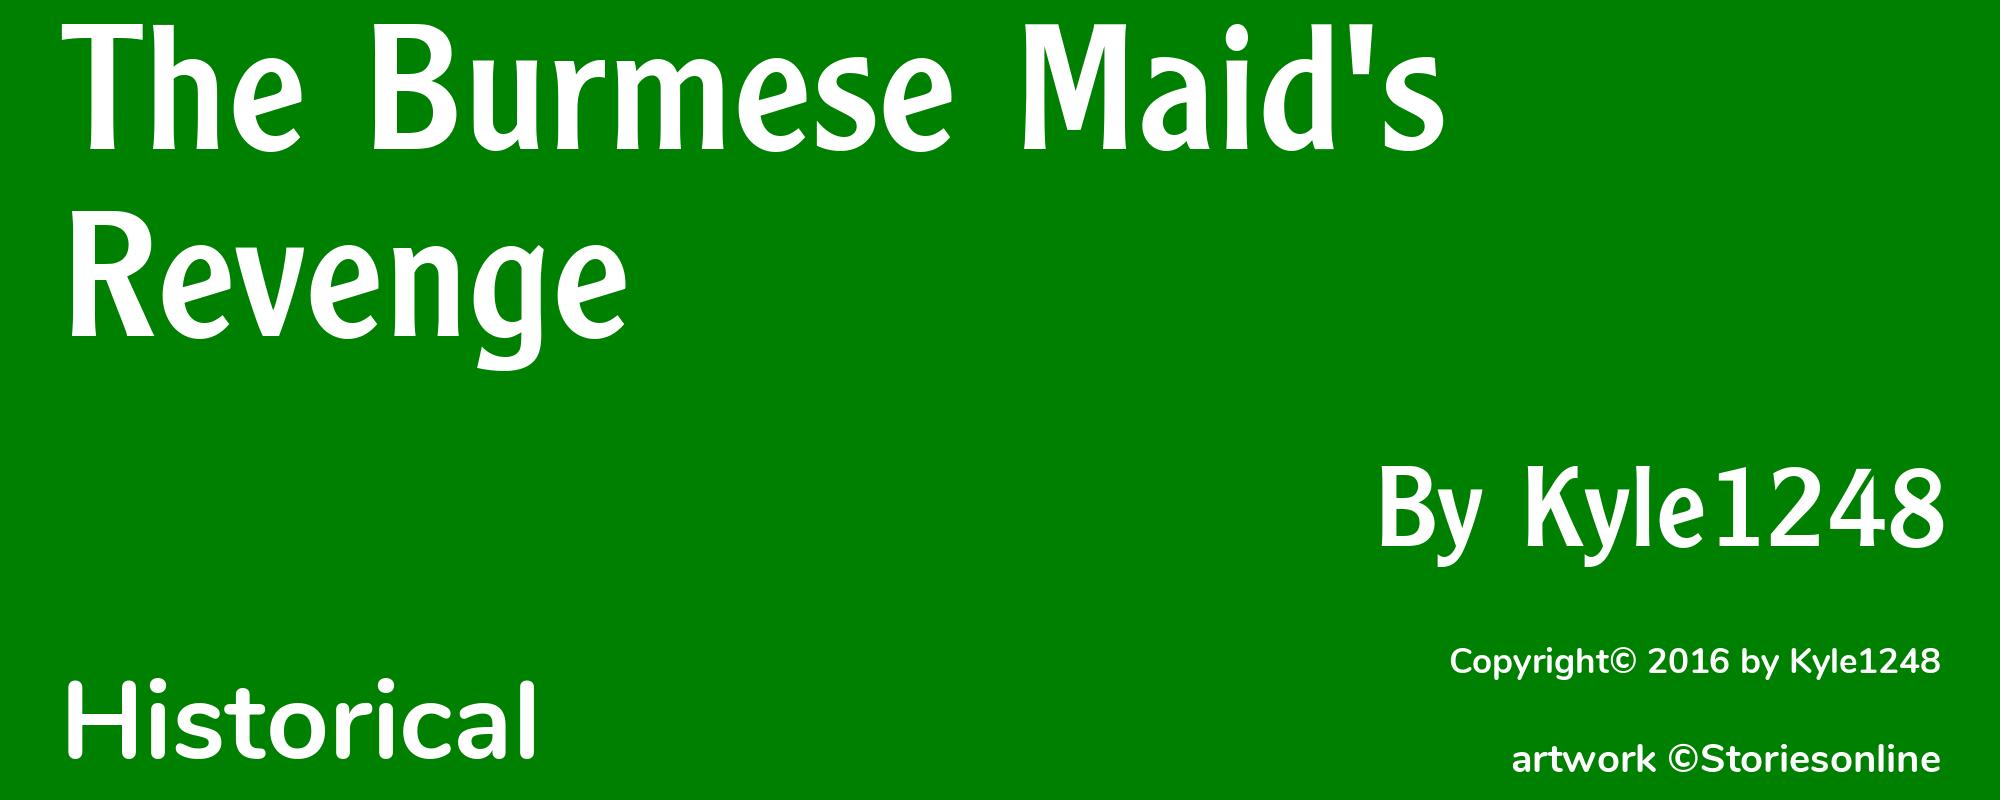 The Burmese Maid's Revenge - Cover